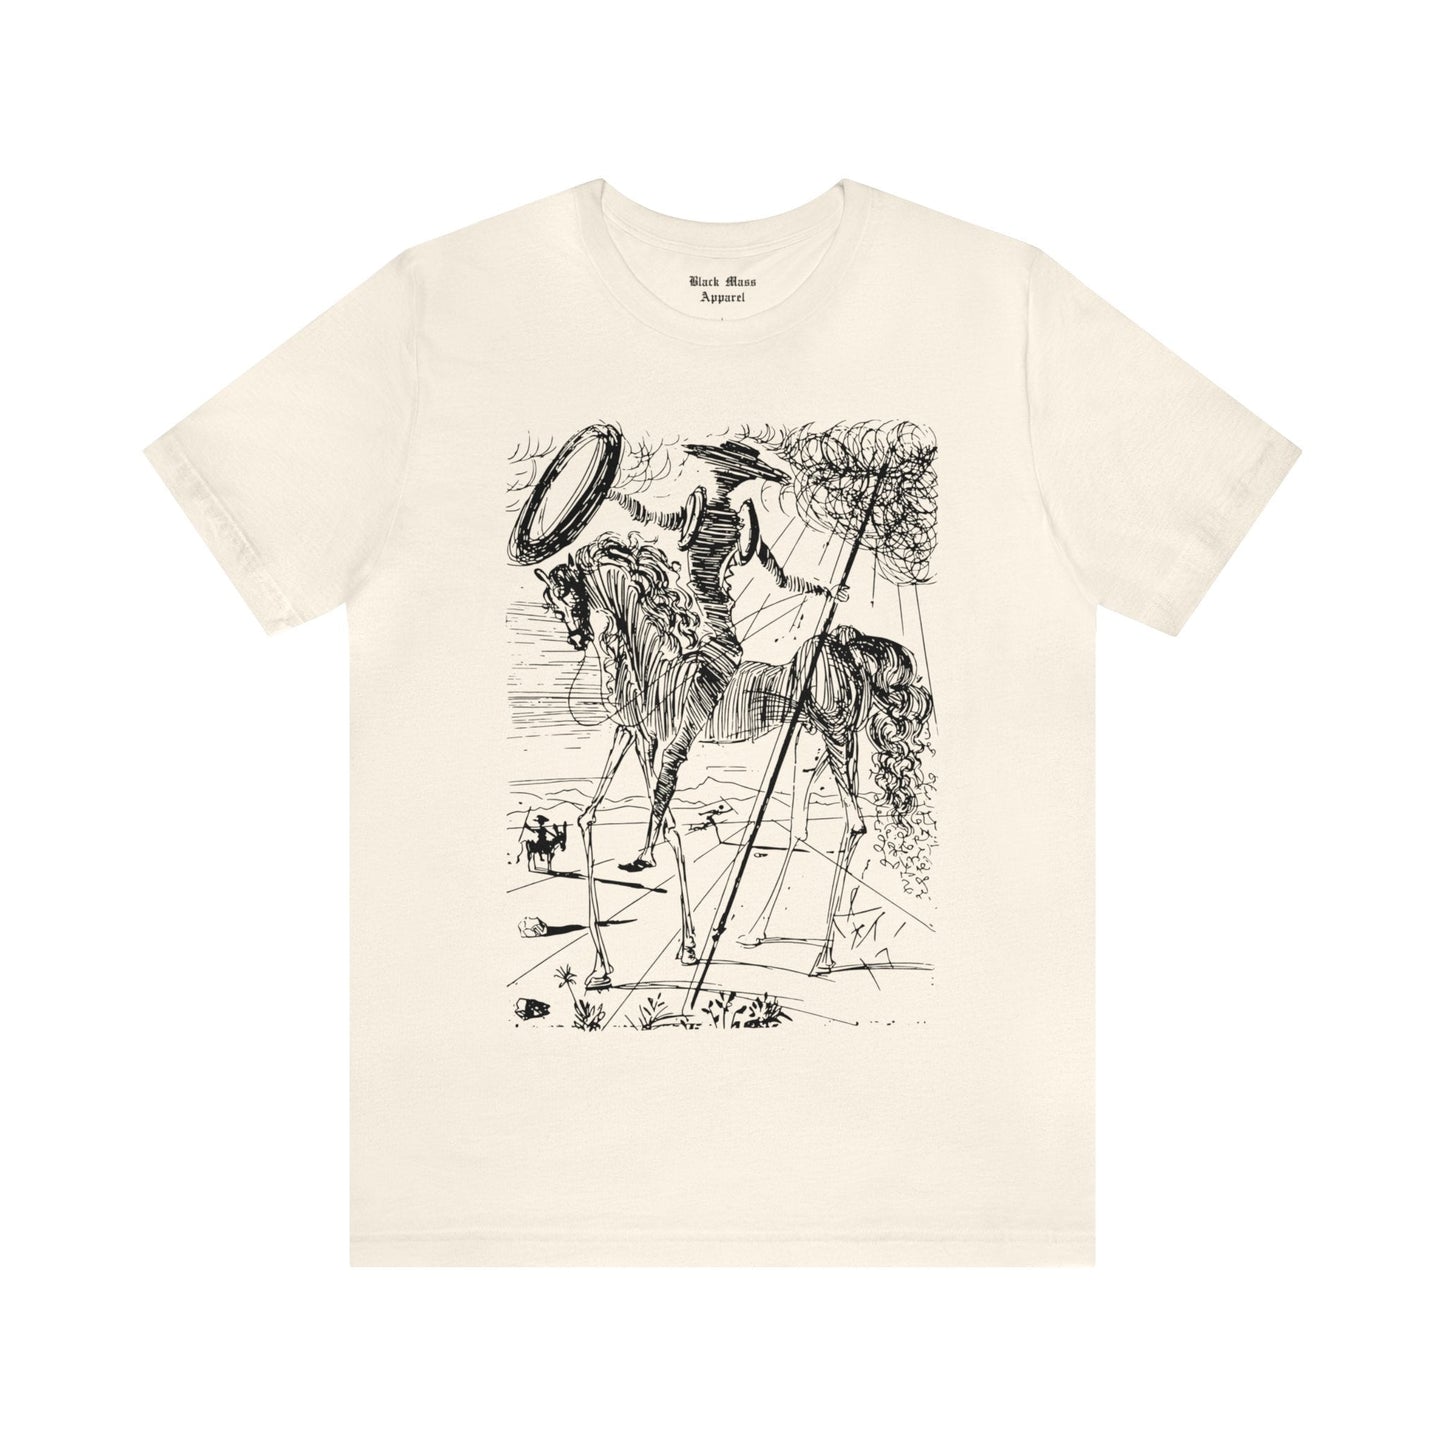 Don Quixote - Salvador Dali - Black Mass Apparel - T-Shirt